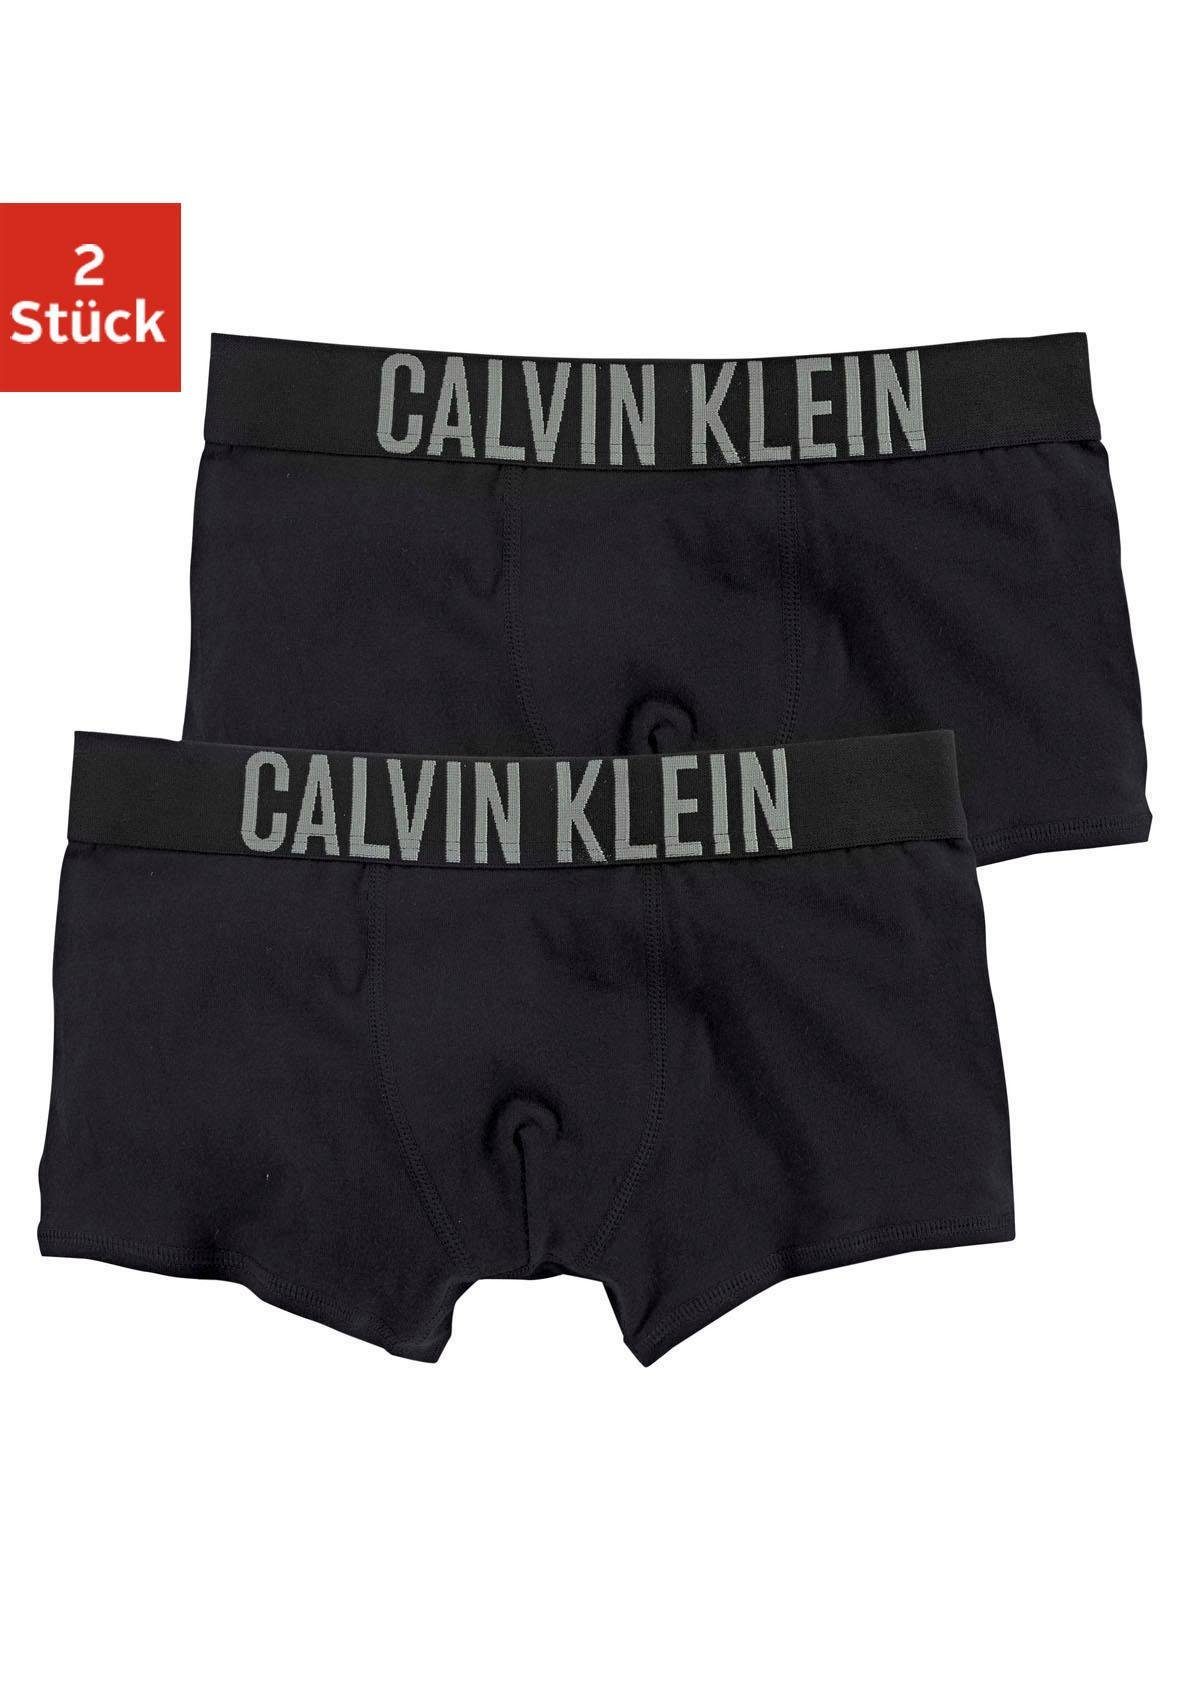 Underwear Junior Kids Kinder (2-St) Trunk MiniMe Intenese Power schwarz Klein Calvin